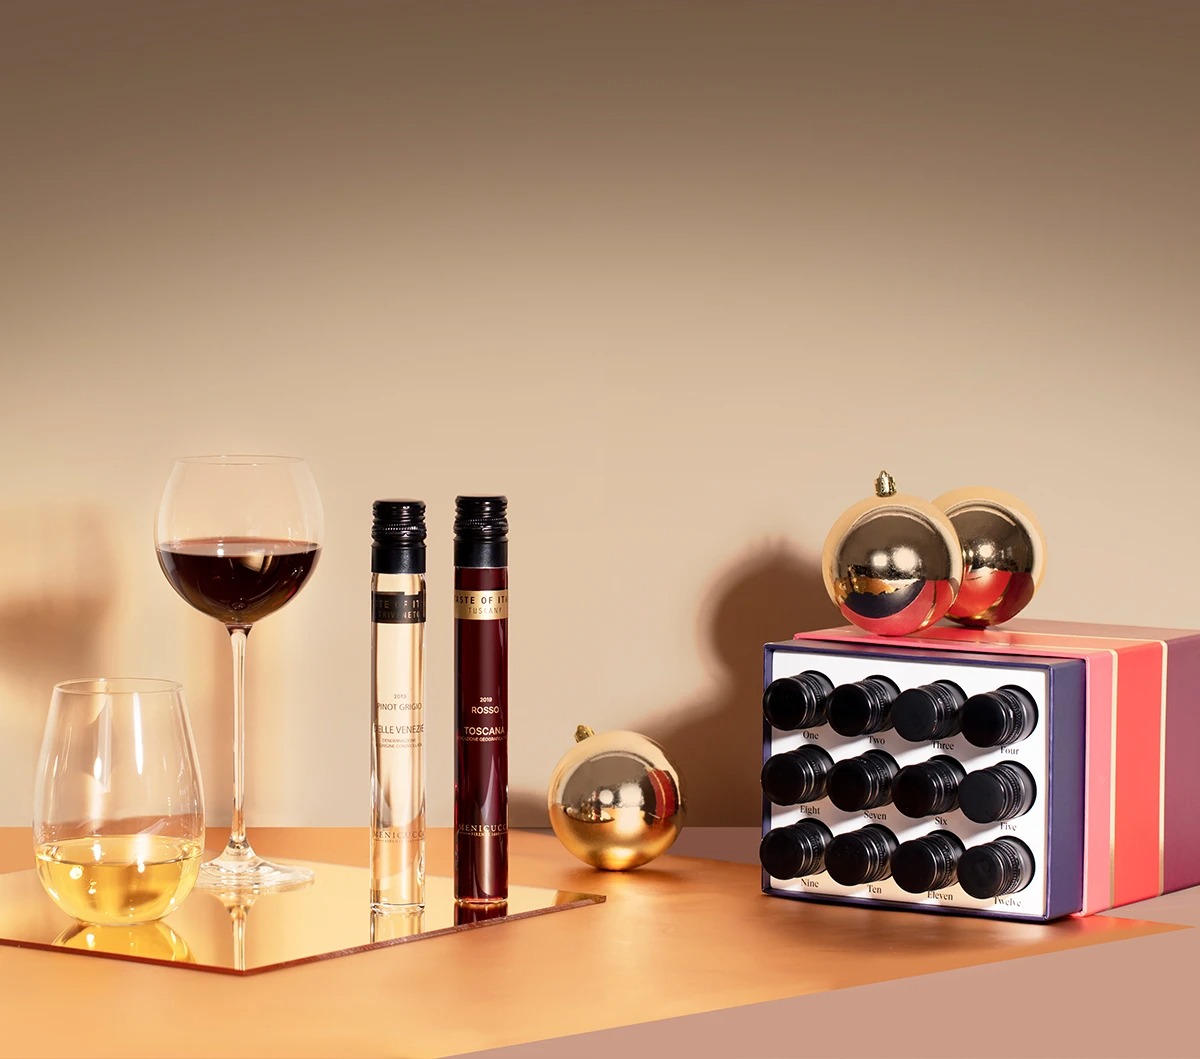 聖誕倒數月曆 advent calendar 聖誕月曆 聖誕禮物 聖誕套裝
Vinebox 12 Nights of Wine - Holiday